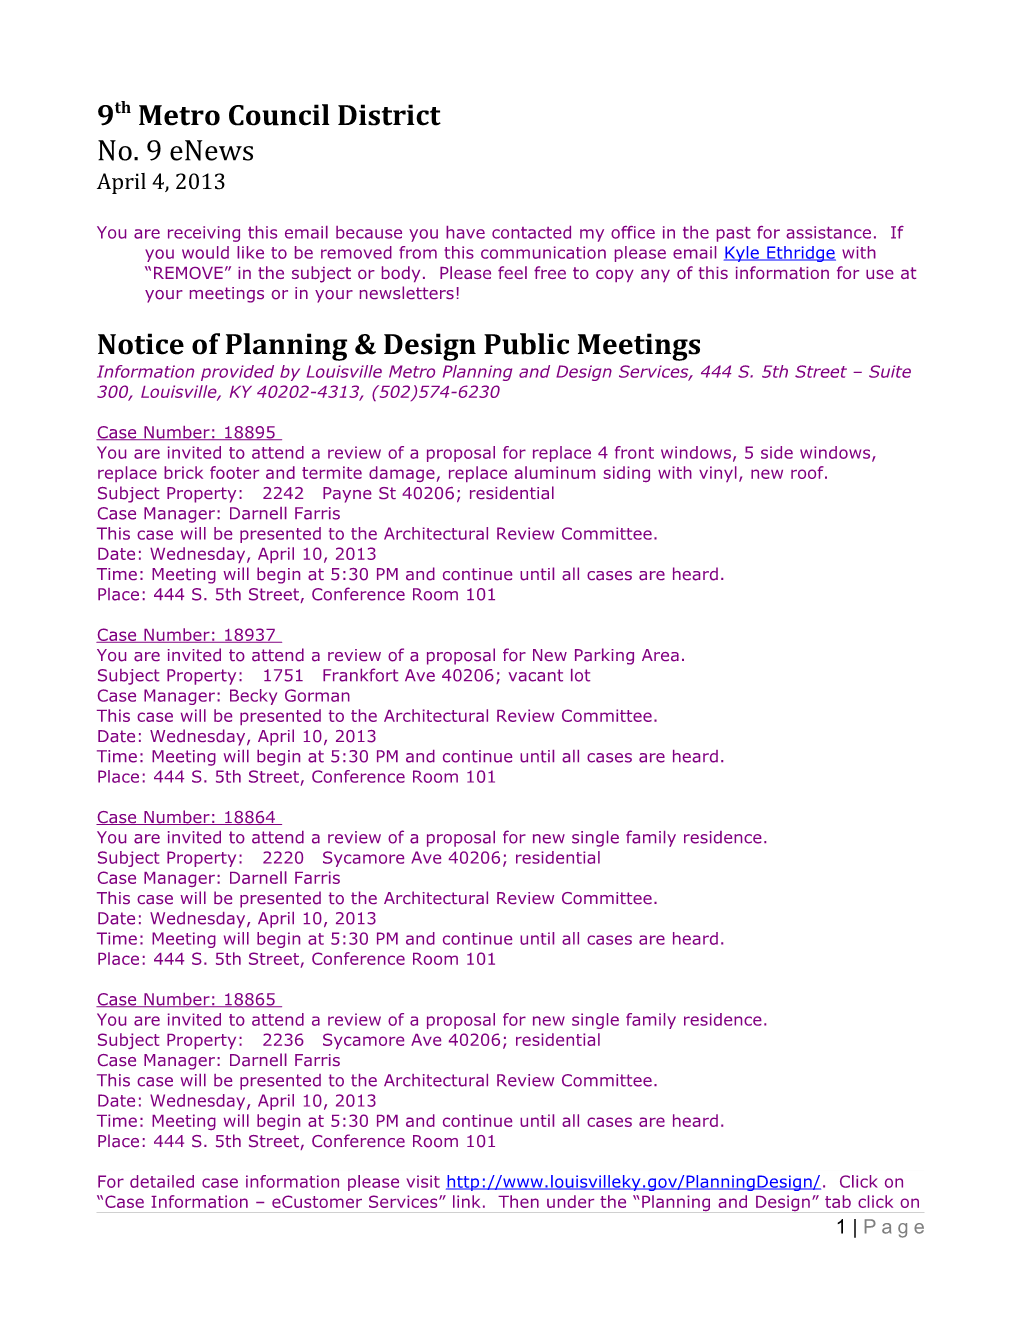 Notice of Planning & Design Public Meetings